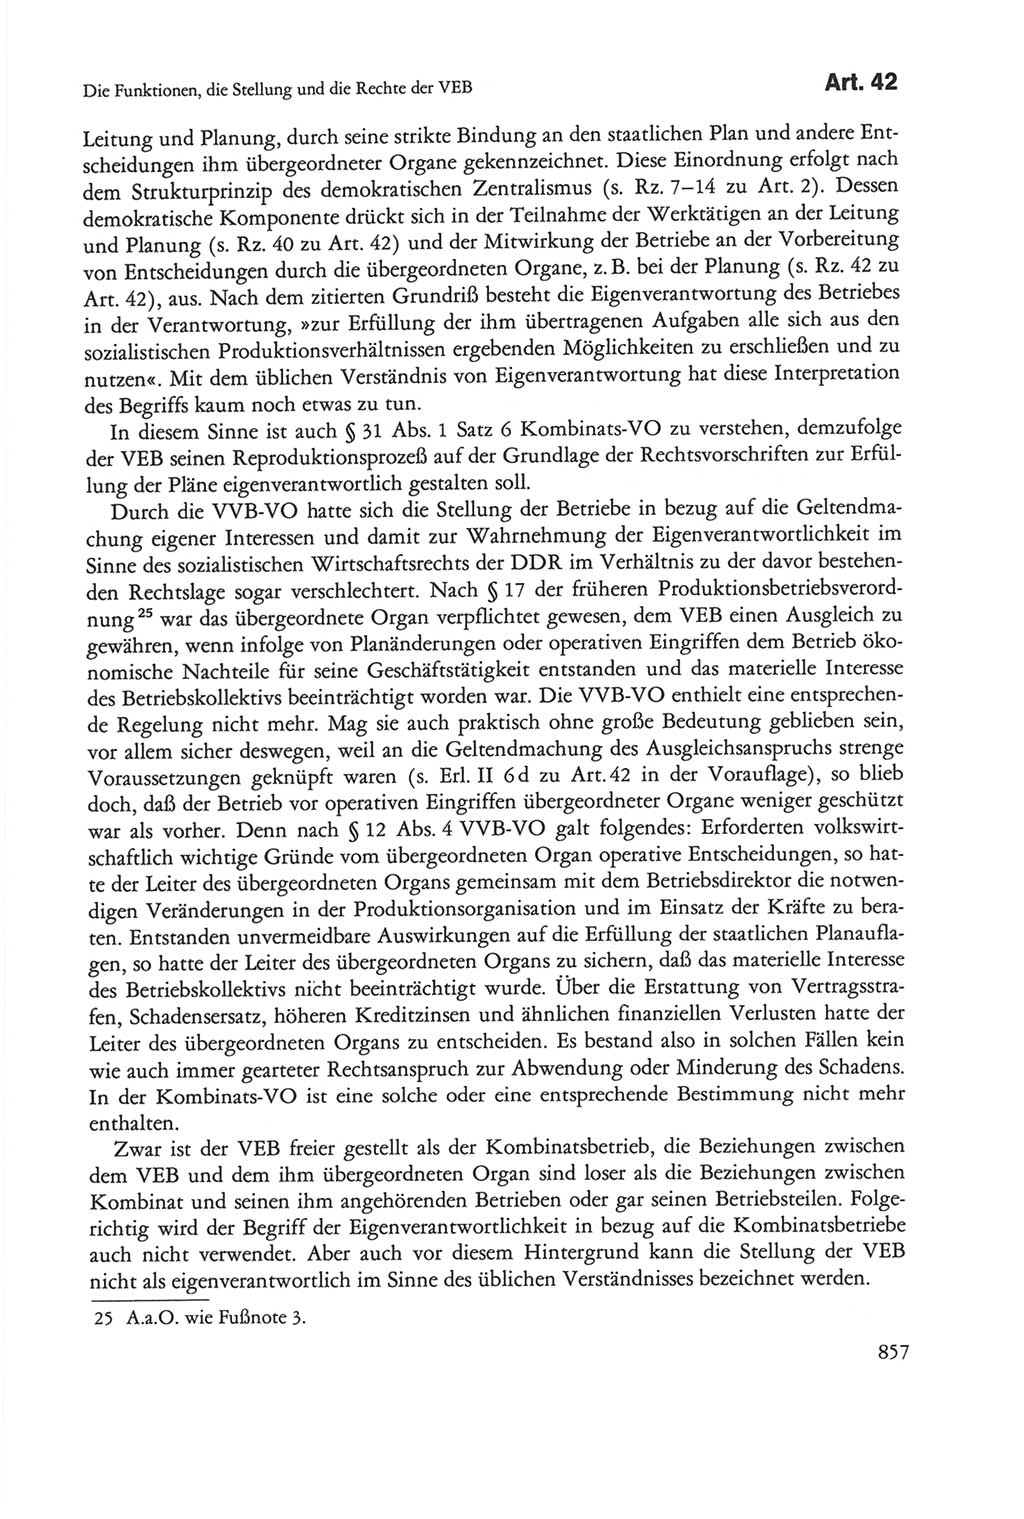 Die sozialistische Verfassung der Deutschen Demokratischen Republik (DDR), Kommentar mit einem Nachtrag 1997, Seite 857 (Soz. Verf. DDR Komm. Nachtr. 1997, S. 857)